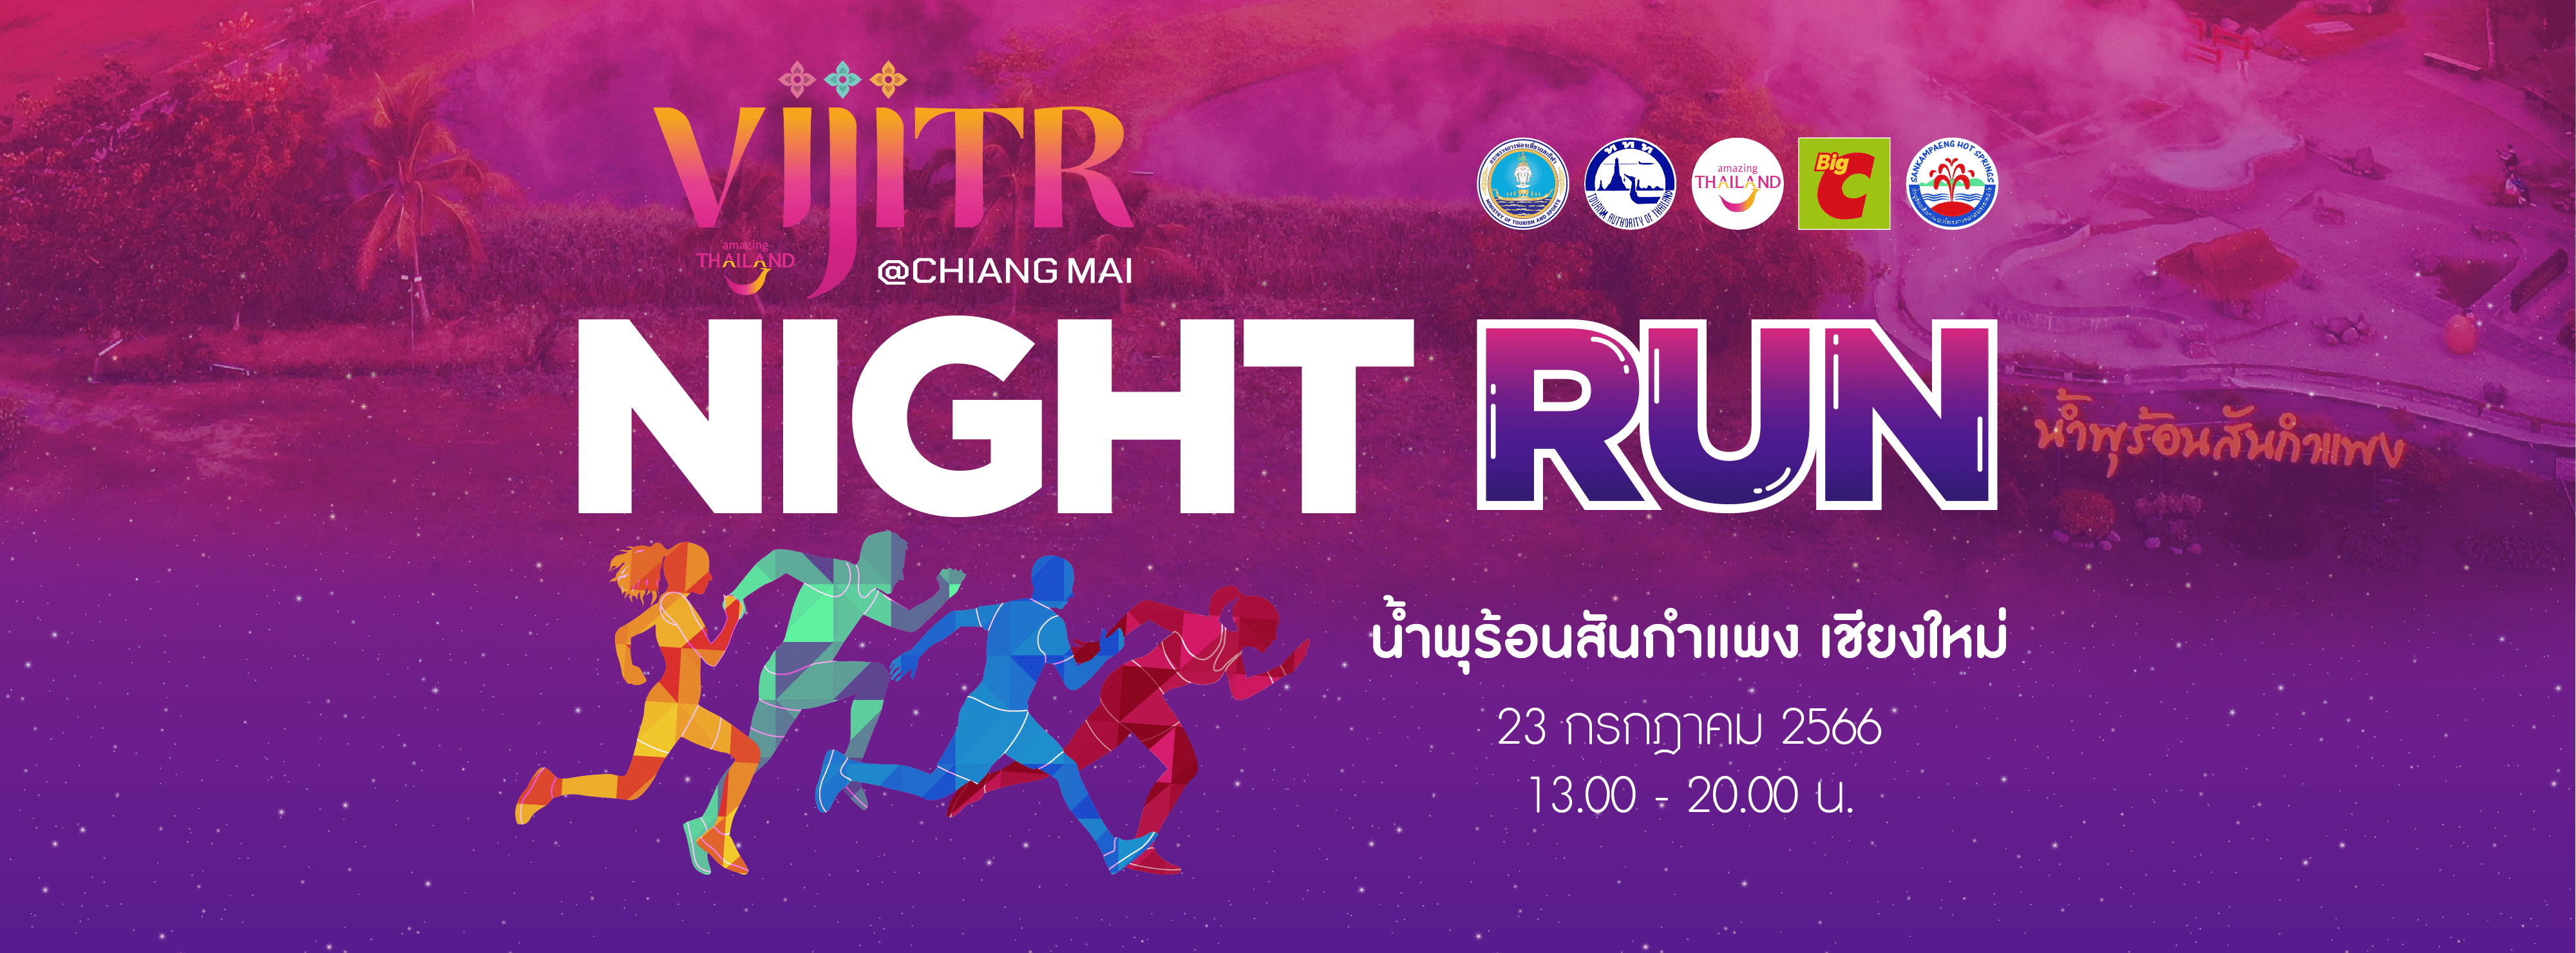 ททท. เชียงใหม่ ชวนวิ่งยามเย็น “VIJITR Chiang Mai Night Run 2023” ที่น้ำพุร้อนสันกำแพง 23 กรกฎาคมนี้ บอกเลยว่า งานนี้จุดถ่ายรูปเพียบ สายถ่ายรูปห้ามพลาดเด็ดขาด